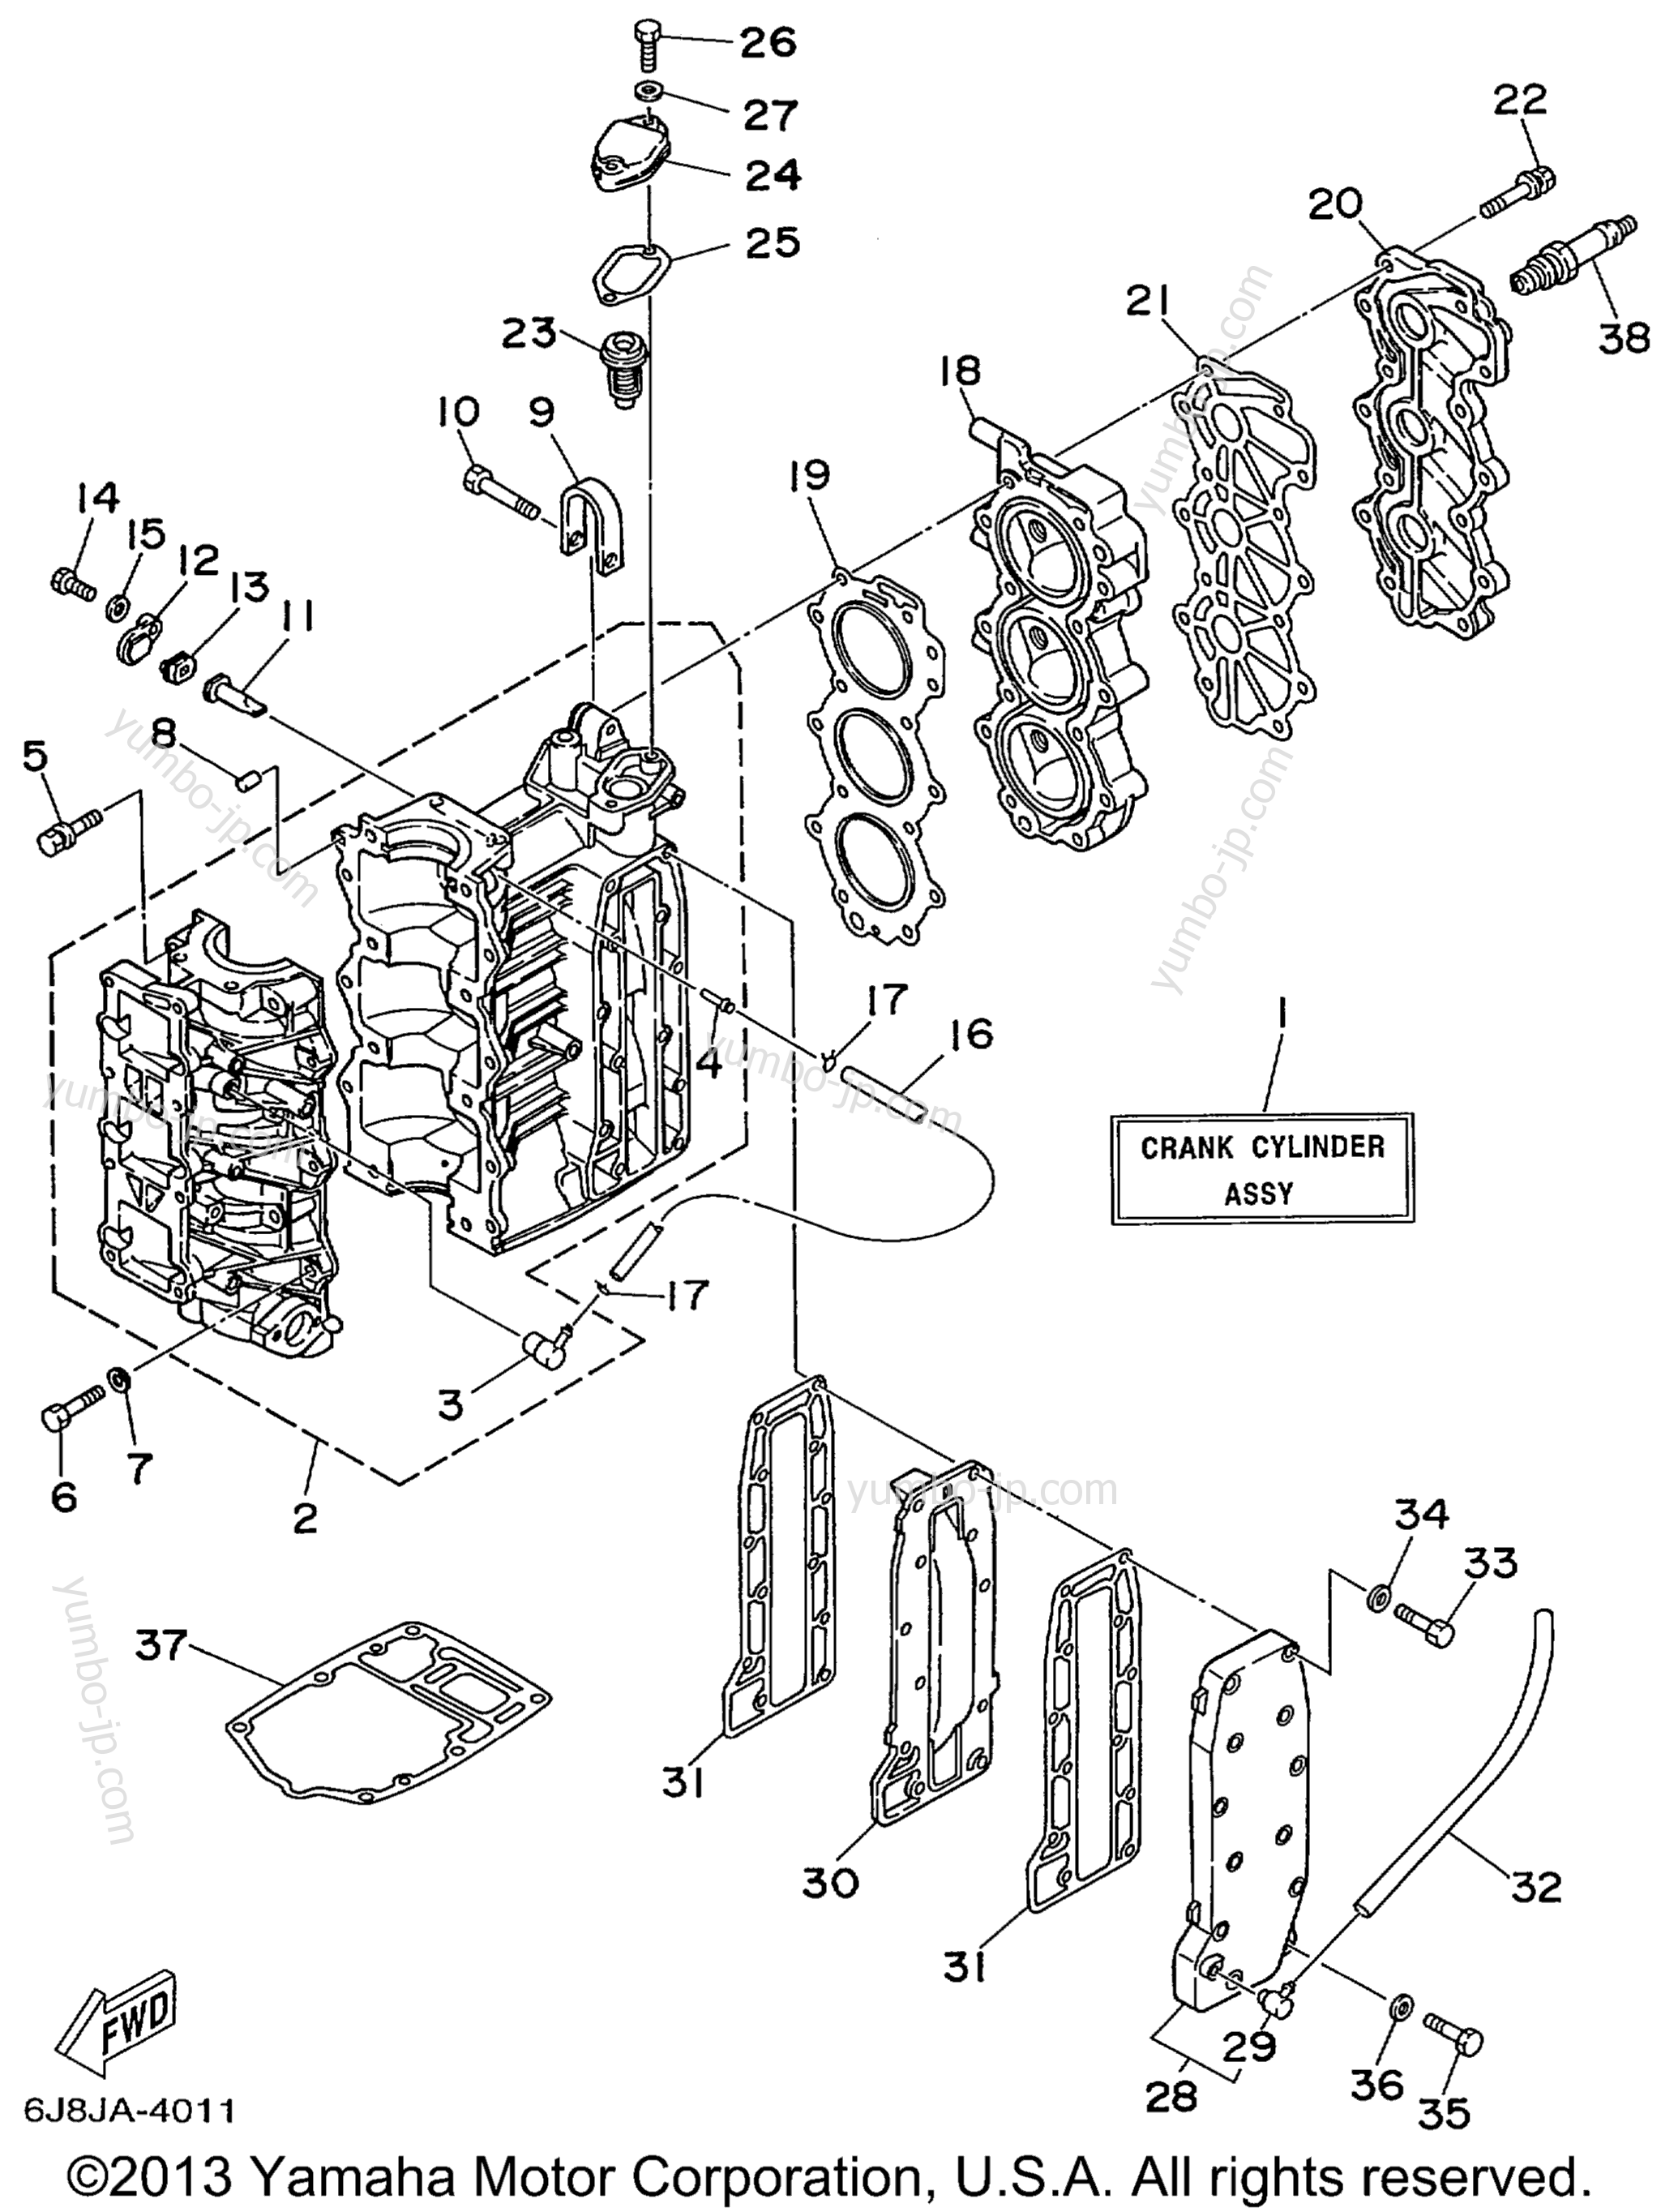 Cylinder Crankcase для лодочных моторов YAMAHA 30MSHX_MLHX_ELHX_ELRX (30MLHX) 1999 г.